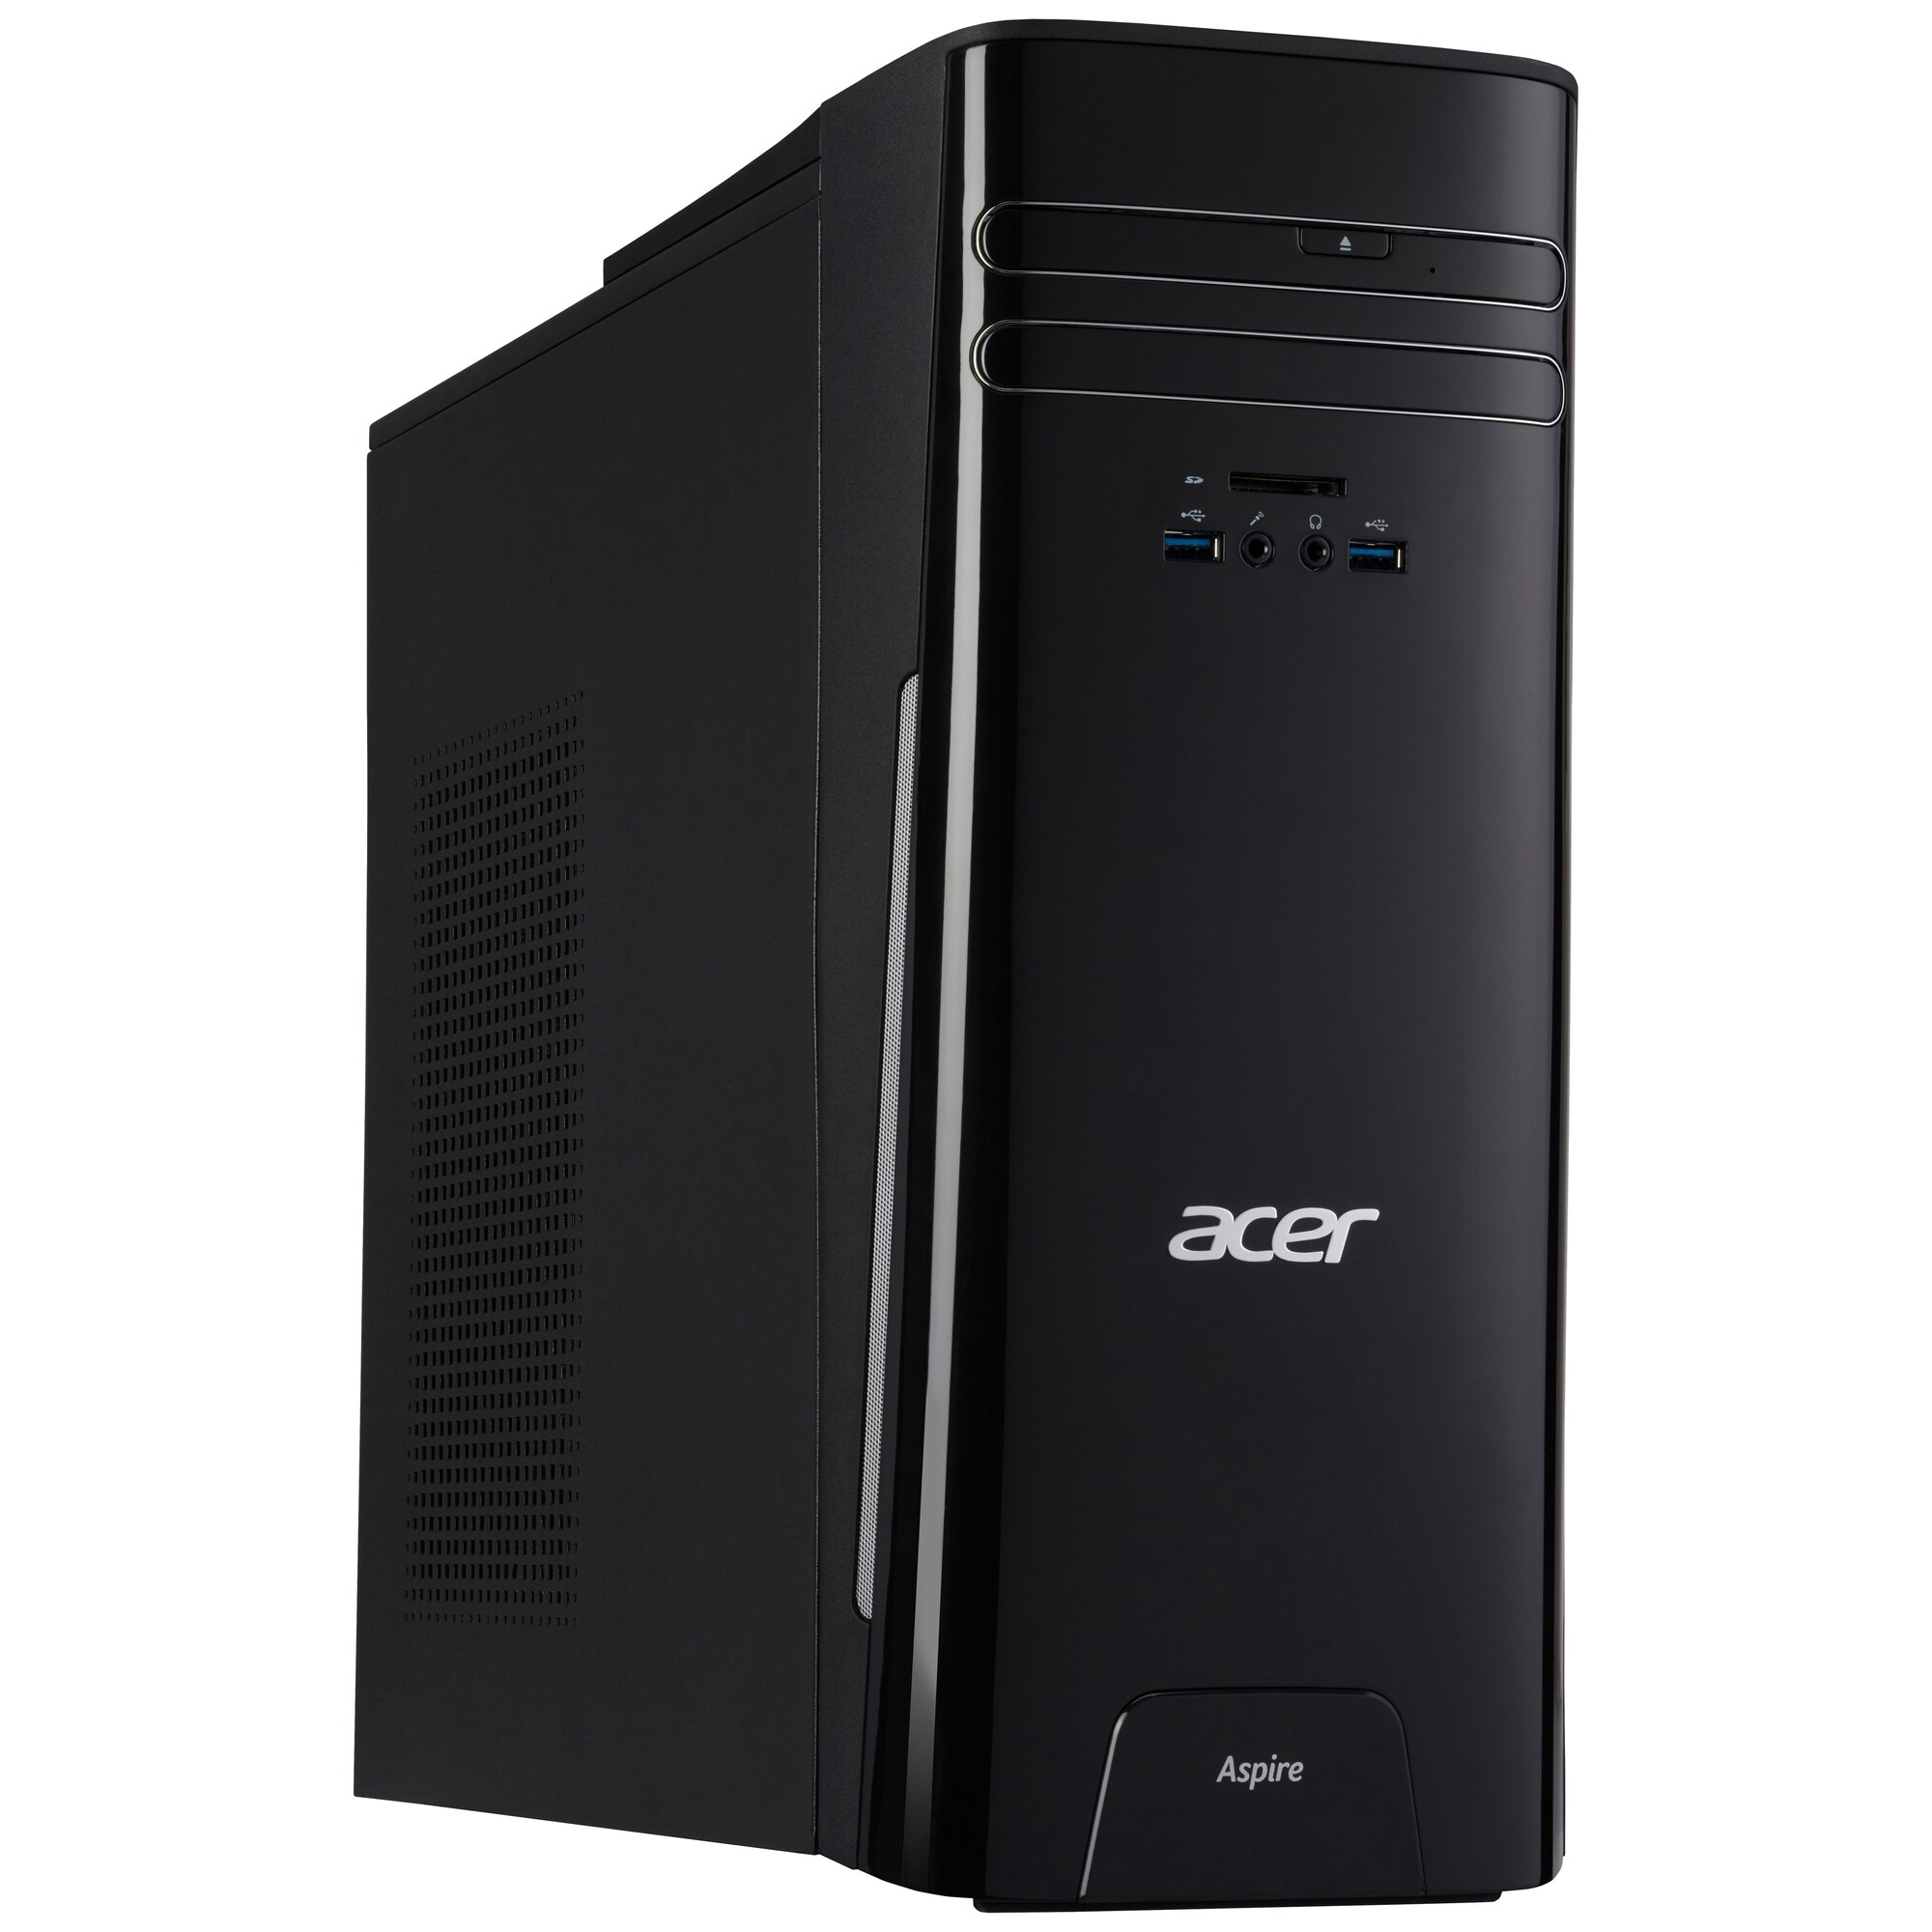 Acer Aspire TC-780 stationær |